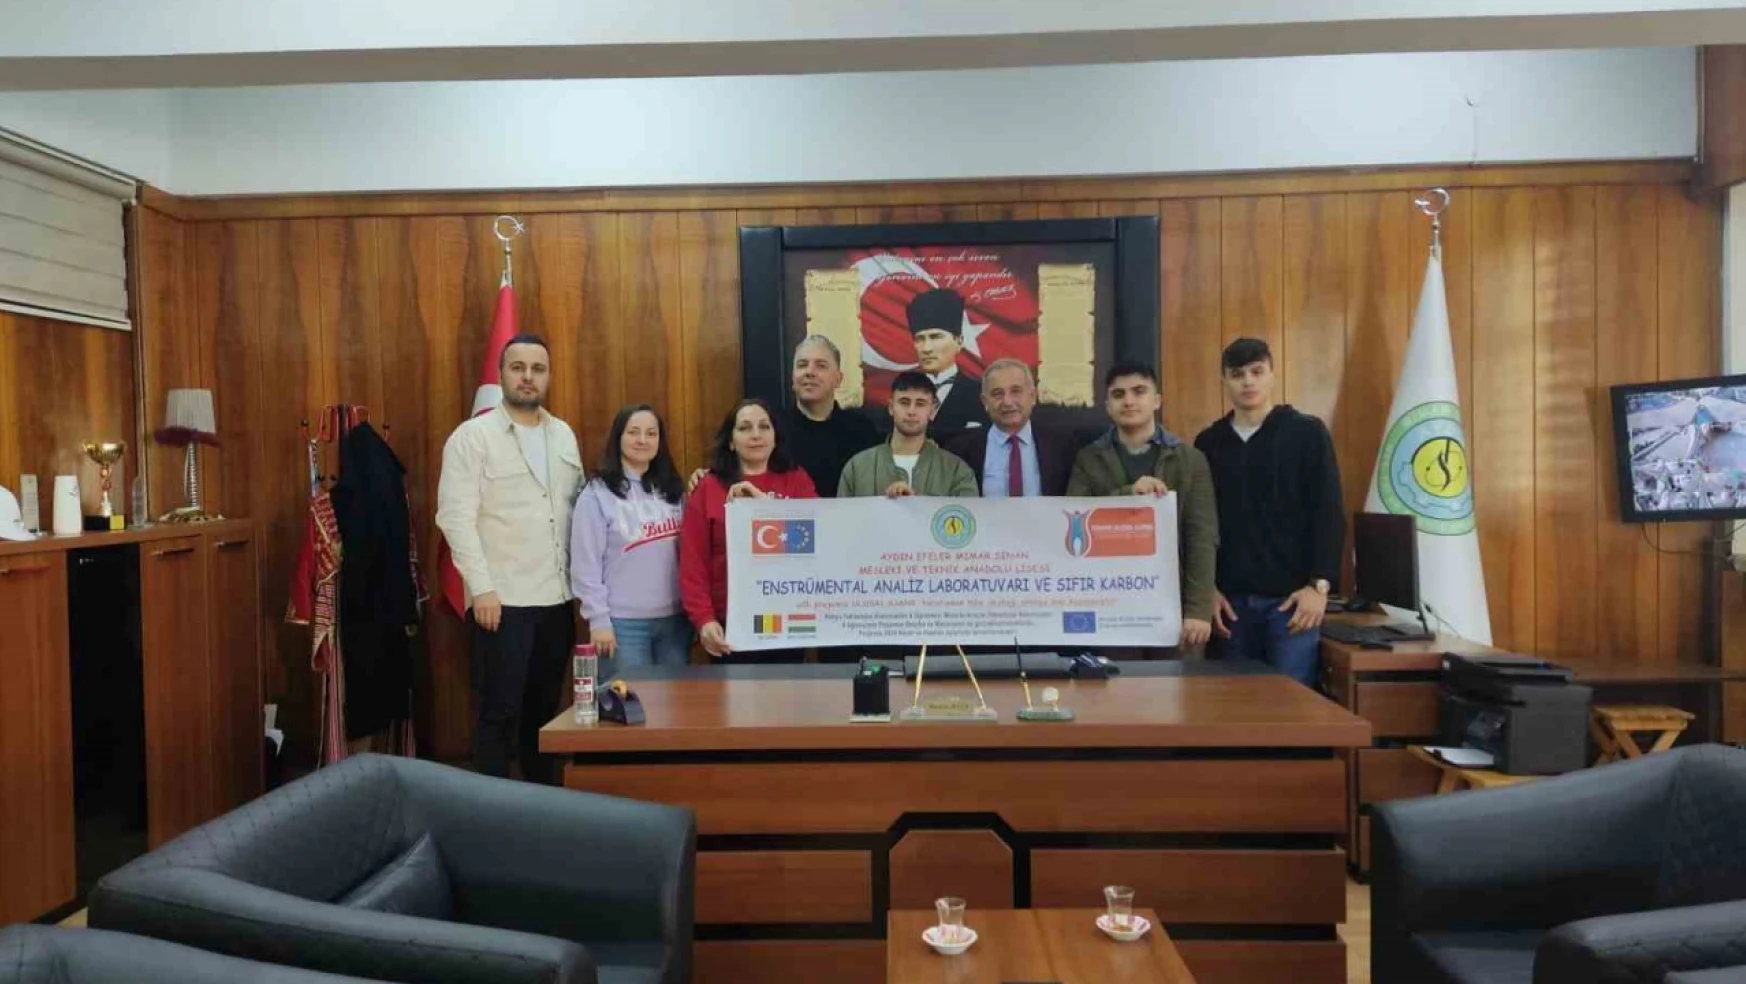 Mimar Sinan Mesleki ve Teknik Anadolu Lisesi'nin projesi hibe desteği aldı